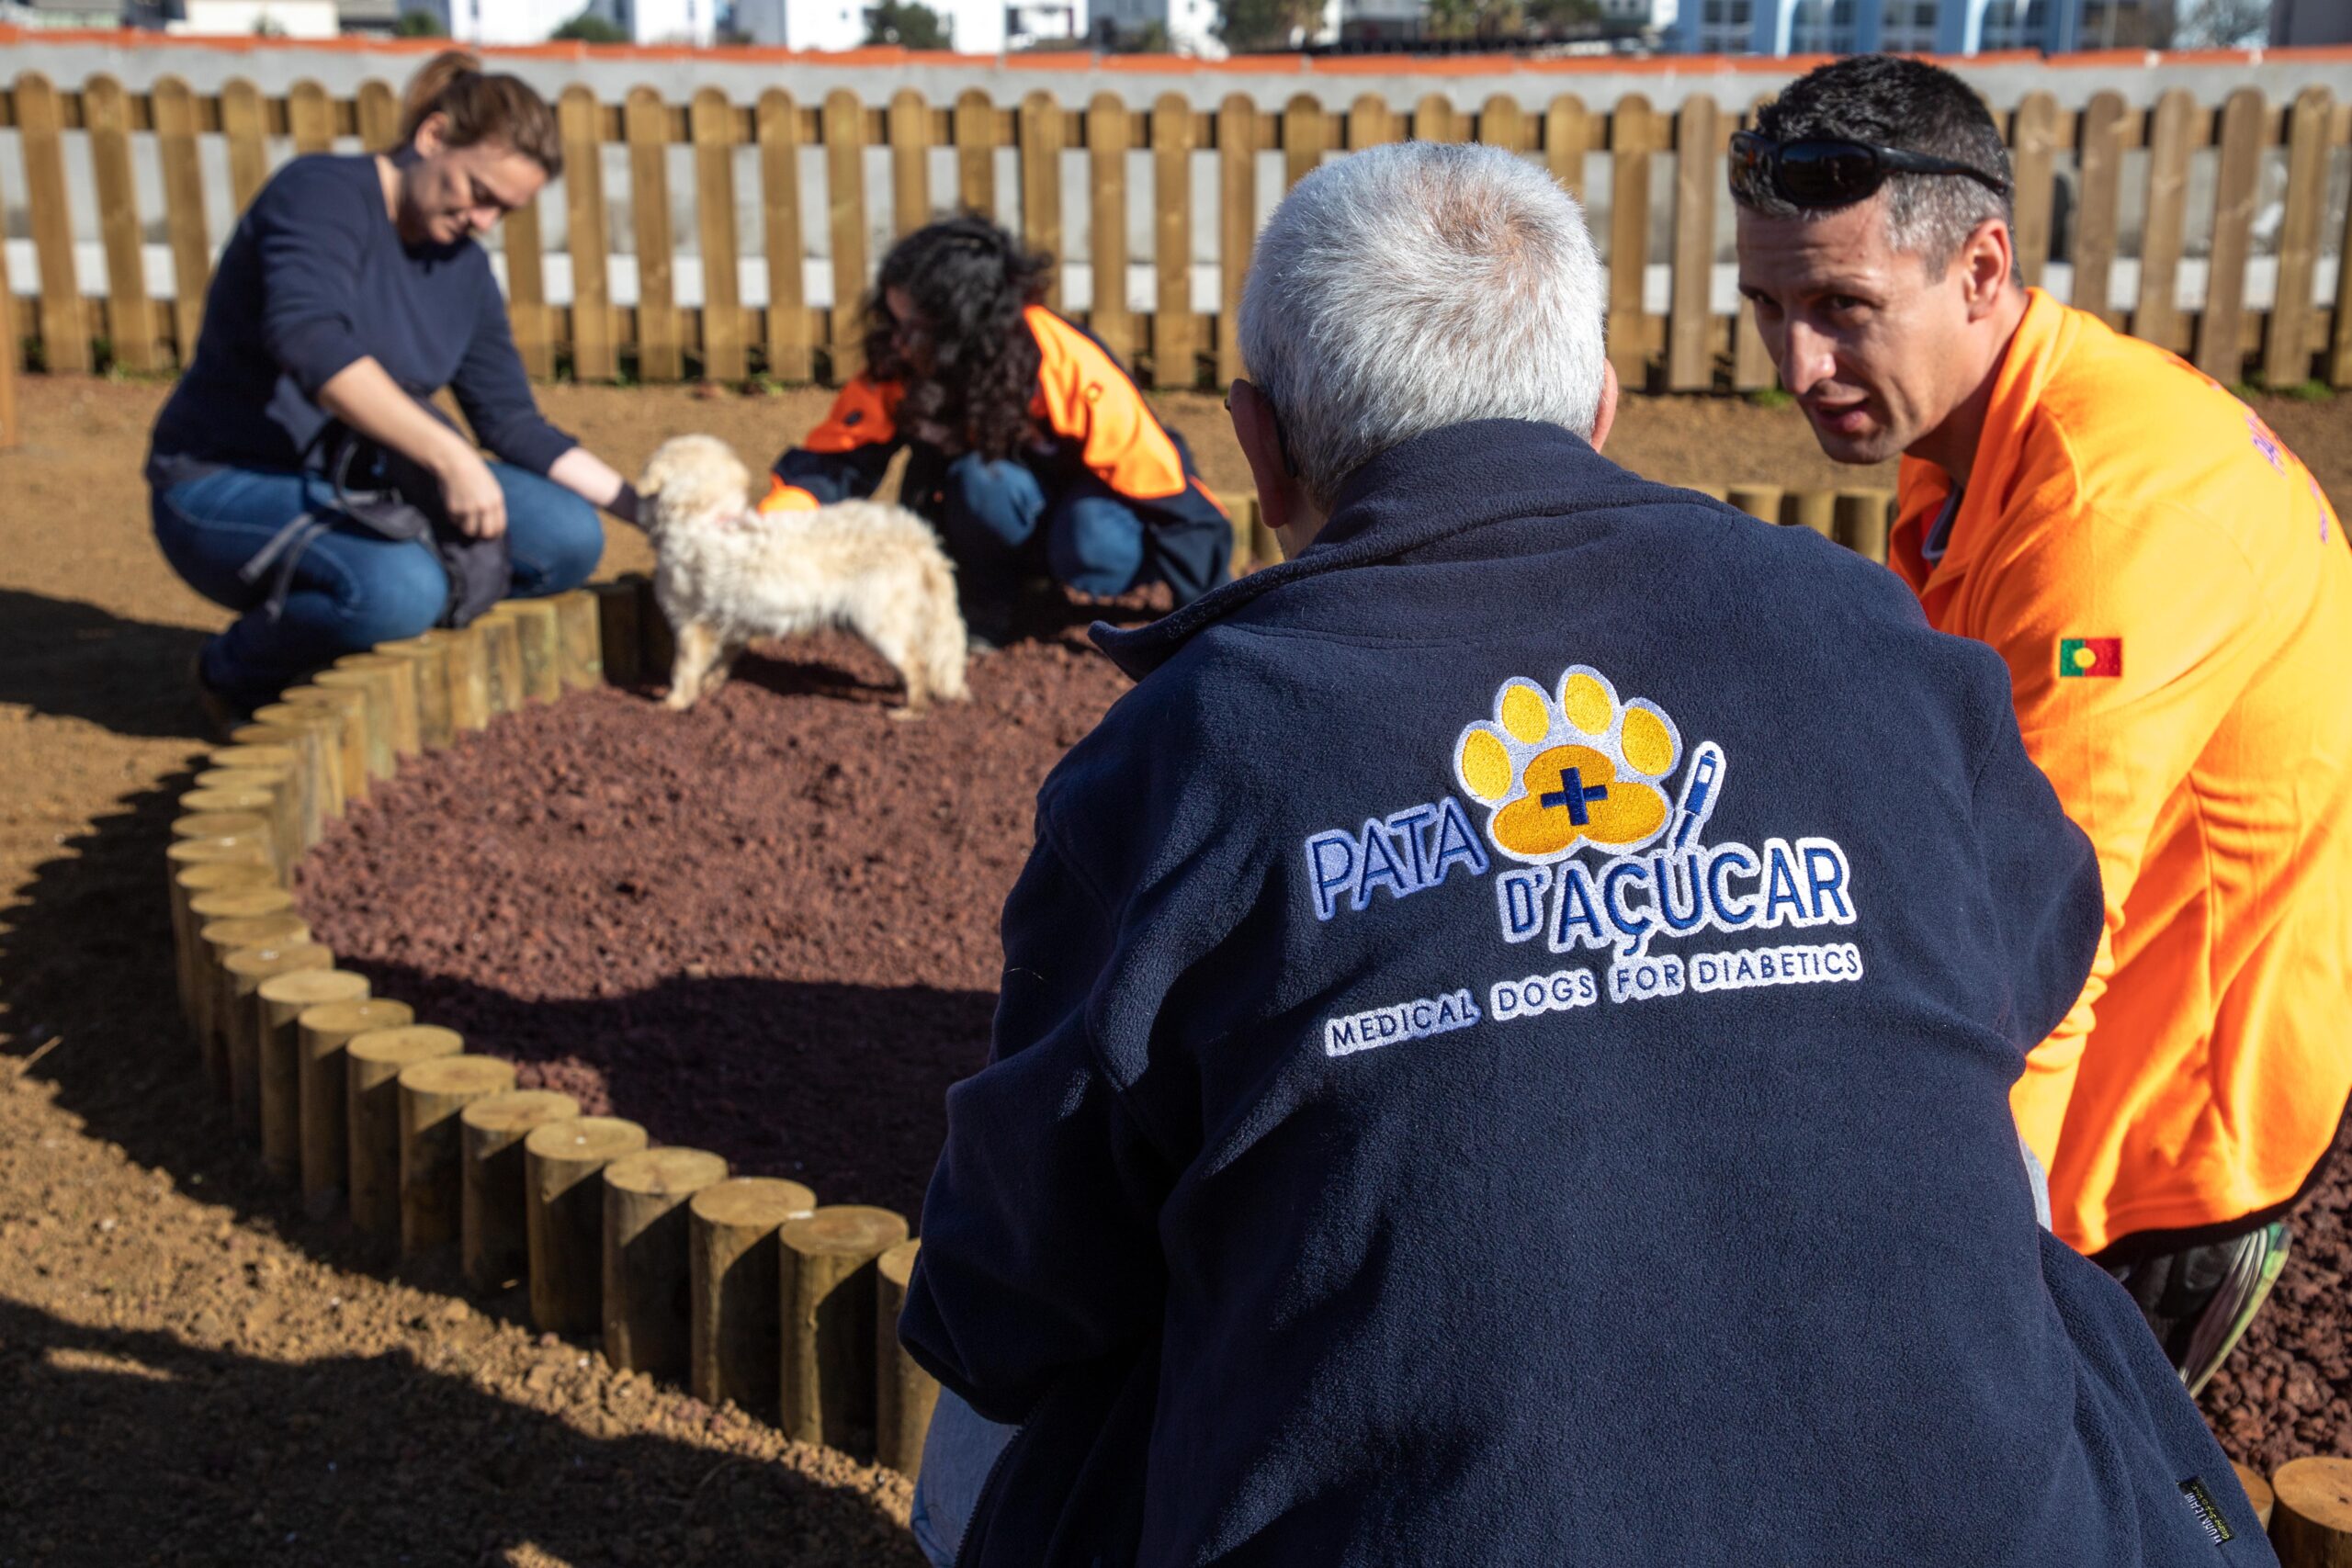 Município de Angra do Heroísmo promove treino de cães para serem cães de alerta médico, em parceira com a Associação Pata D` Açúcar